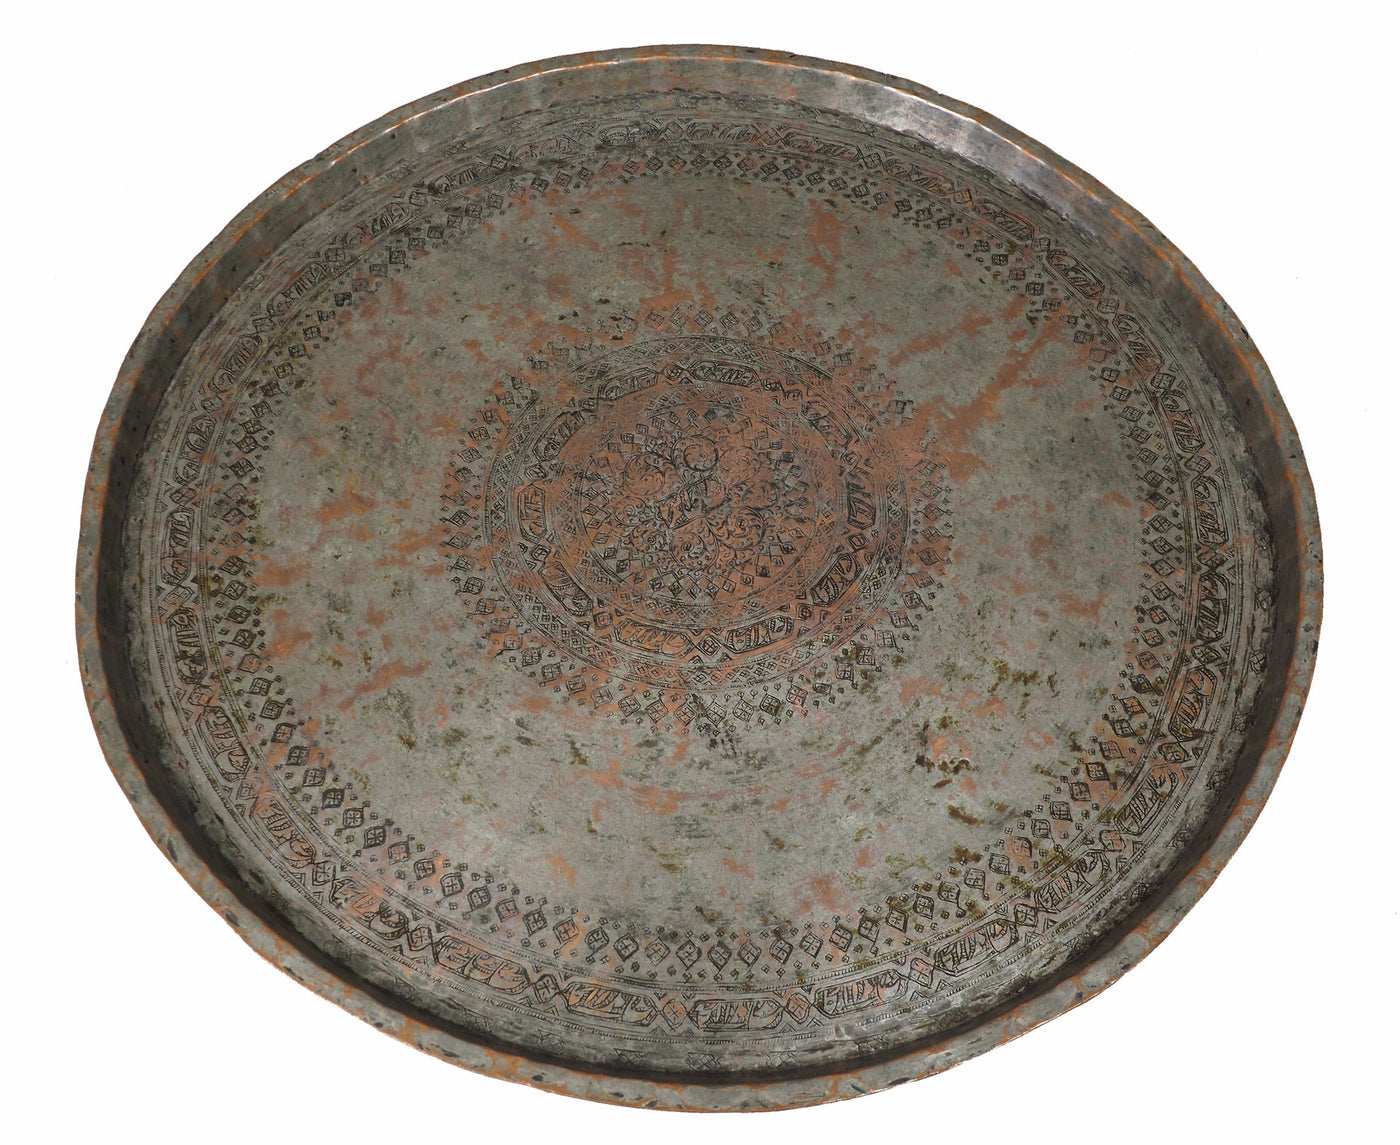 67 cm Ø antik osmanische islamische ägyptisch marokkanisch orient Kupfer tablett Teetisch Teller beisteltisch tisch aus Afghanistan No:16/4  Orientsbazar   